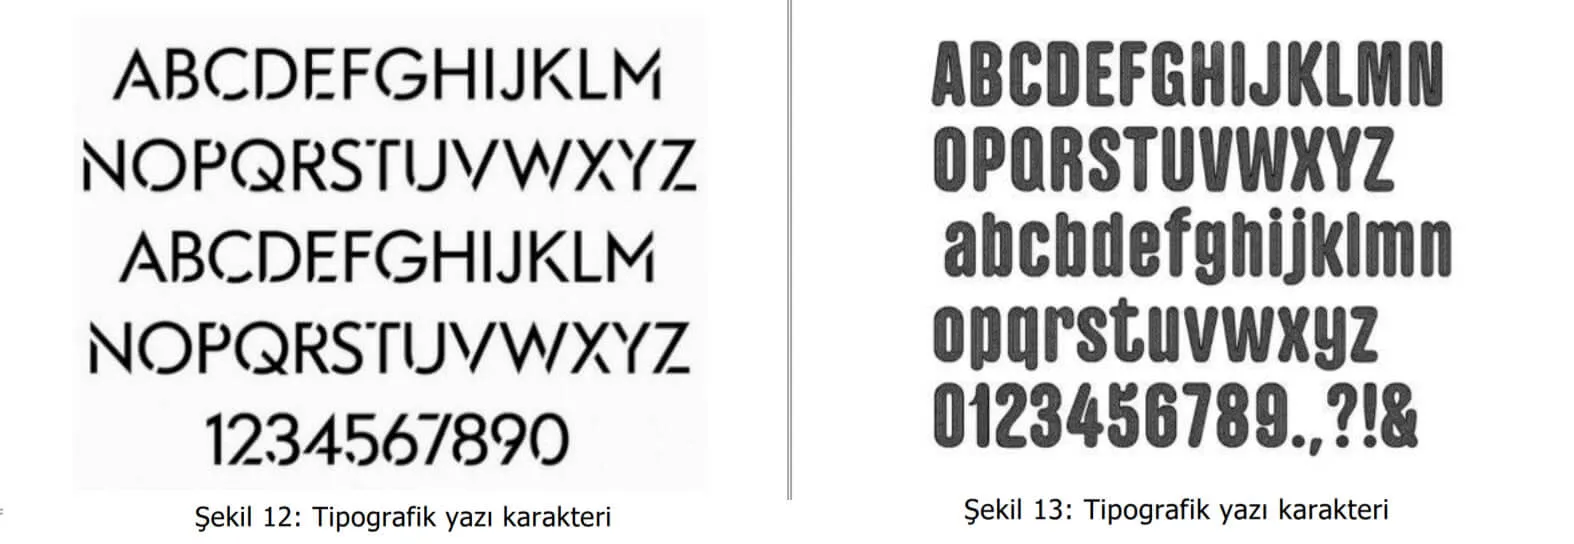 tipografik yazı karakter örnekleri-zeytinburnu web tasarım